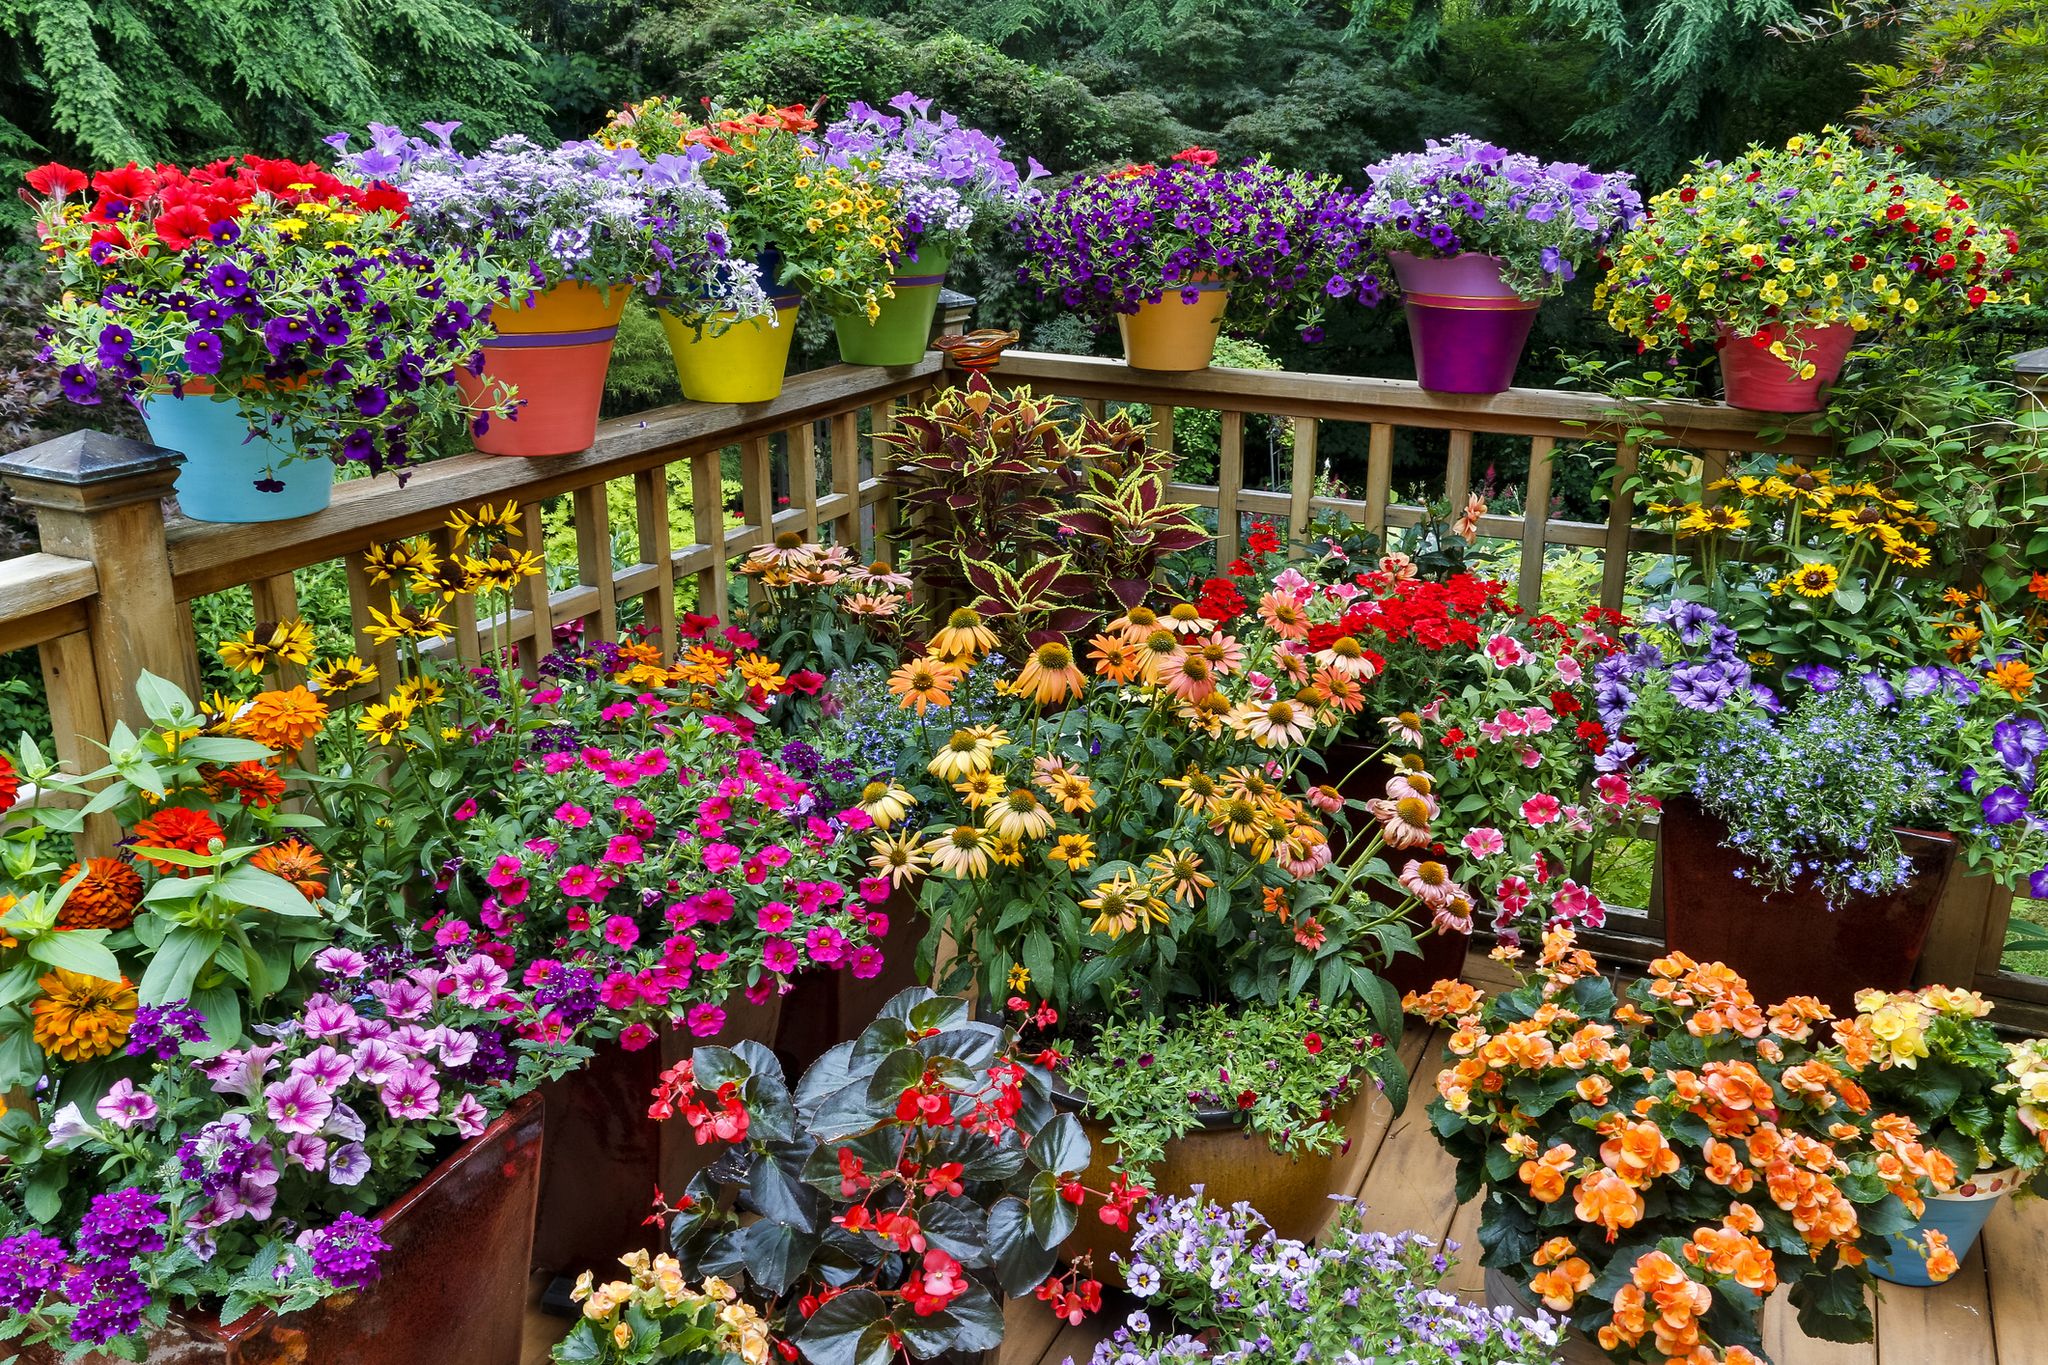 Jardineras exterior Grandes, Compra Todo para tu Jardín